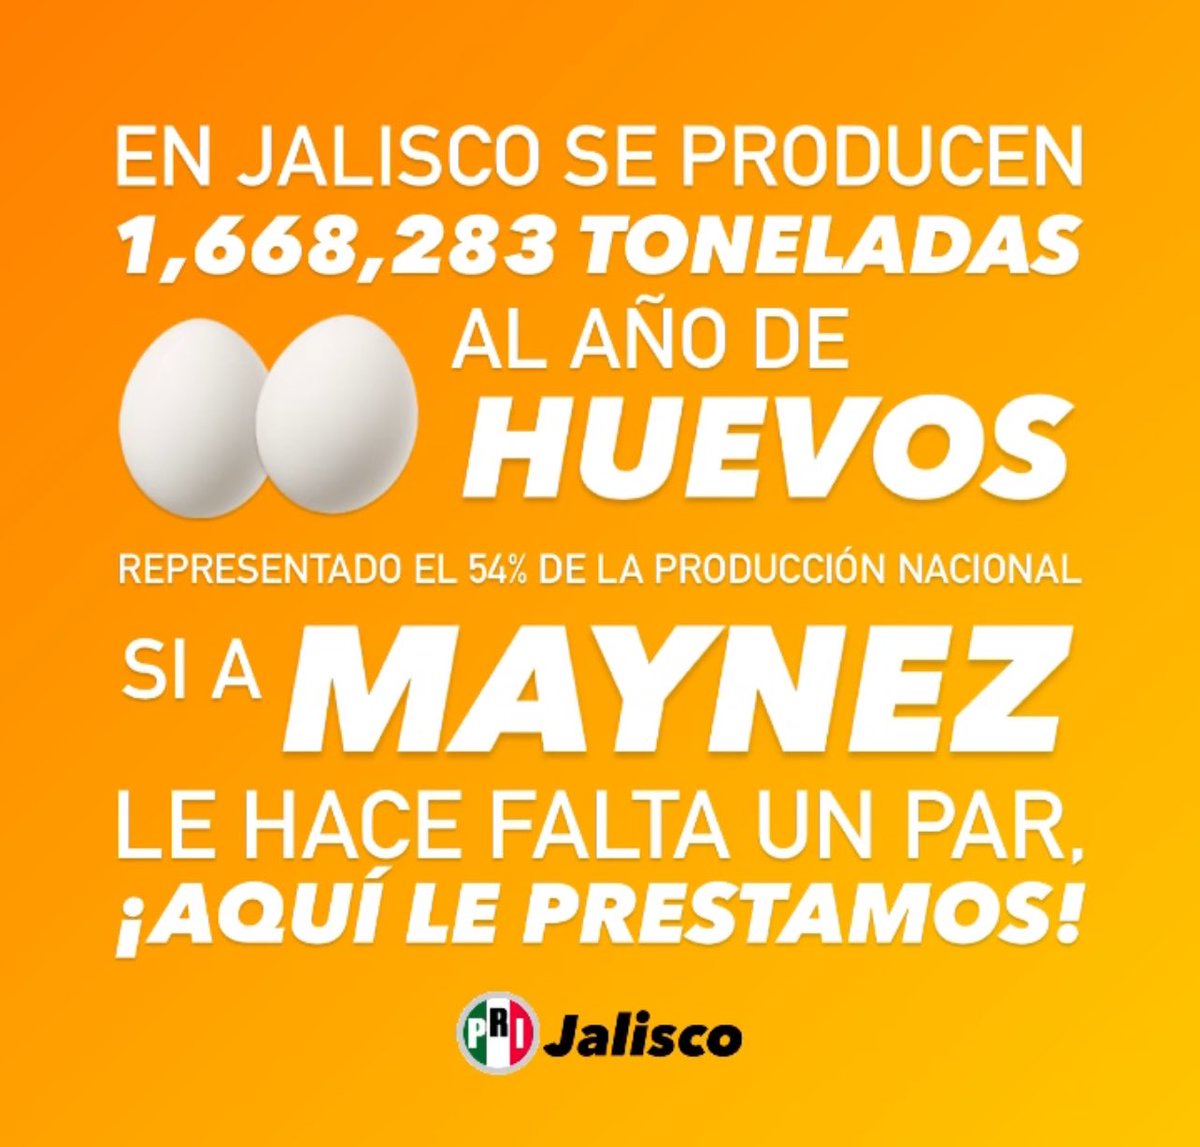 En Jalisco se producen 1,668,283 toneladas de huevos al año; representando el 54% de la producción nacional. Si a @AlvarezMaynez le hace falta un par, aquí le prestamos. #MaynezDeclinaXMéxico #MaynezRajón